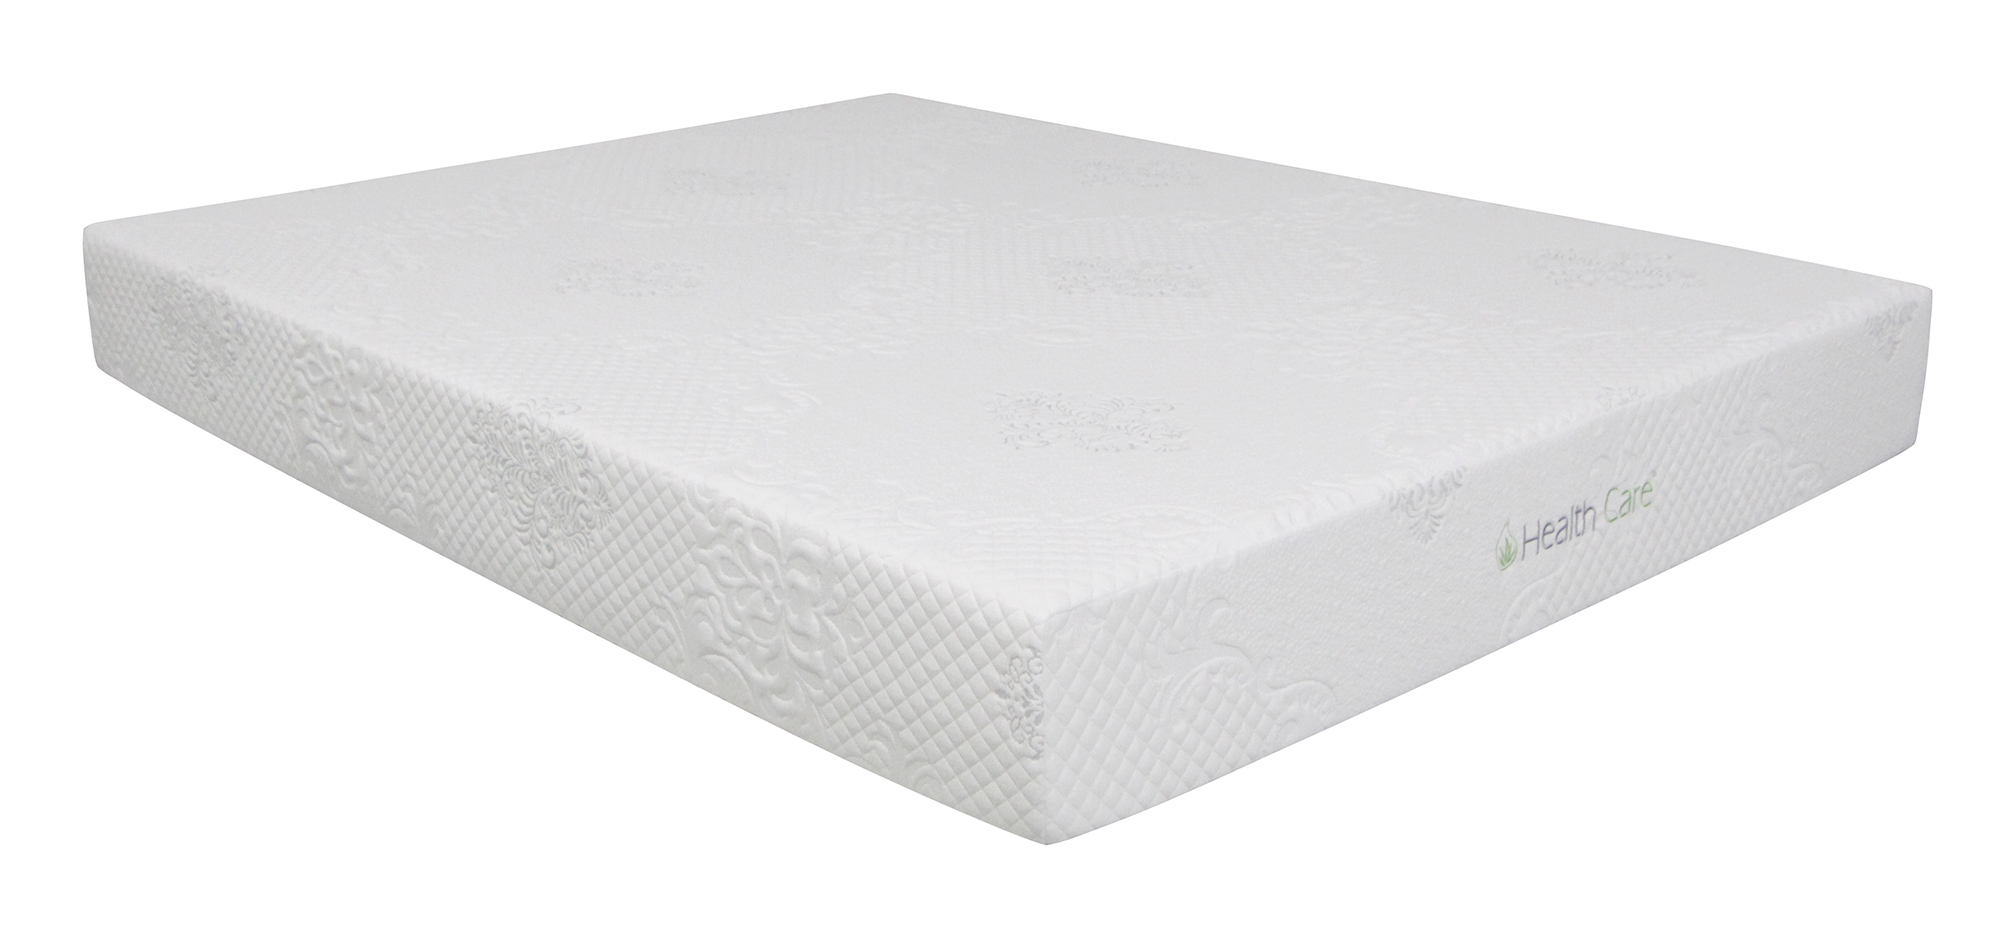 healthcare memory foam mattress dealers